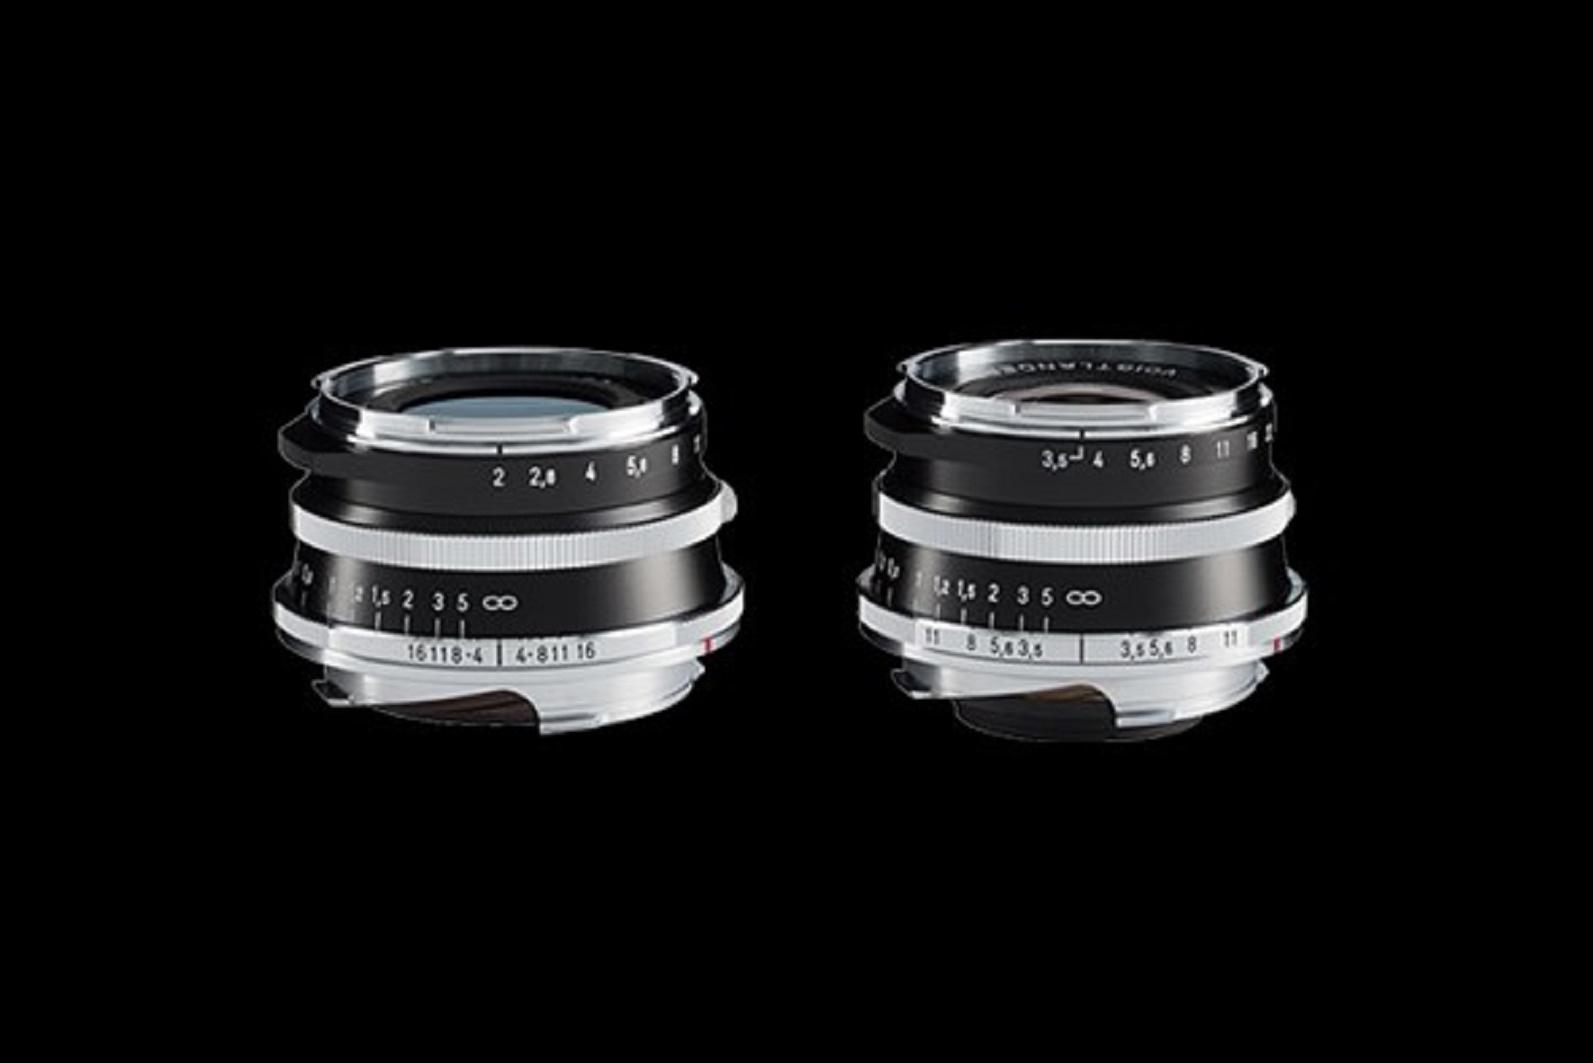 Voigtlander giới thiệu ống kính Color-Skopar 21mm F3.5 và Ultron 35mm F2 cho máy ảnh Leica ngàm M